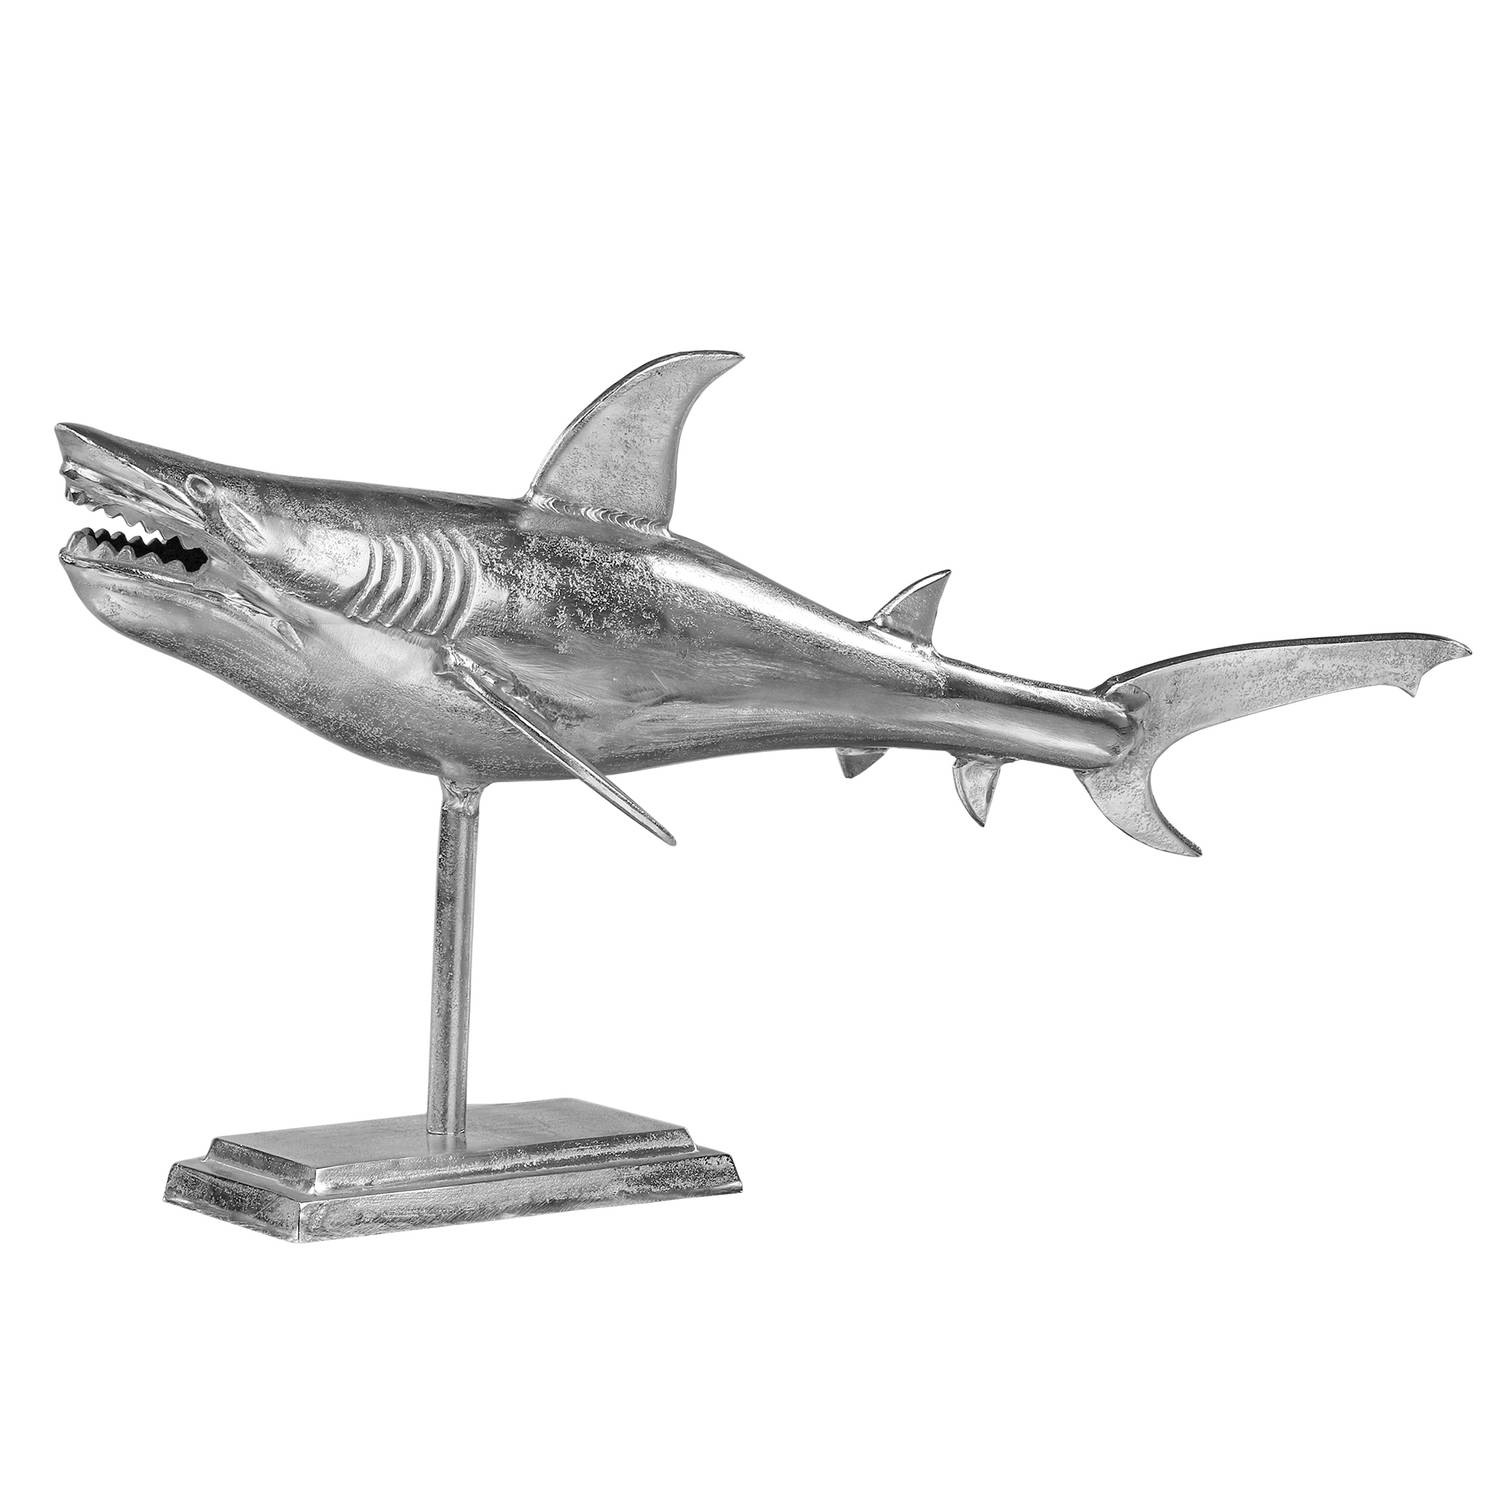 WOMO-DESIGN Haaienbeeld met standaard 106x36x61 cm uniek, gemaakt van gepolijst aluminium met nikkel afwerking, glanzend zilver, maritiem ontwerp, haaienbeeld decoratief figuur vis